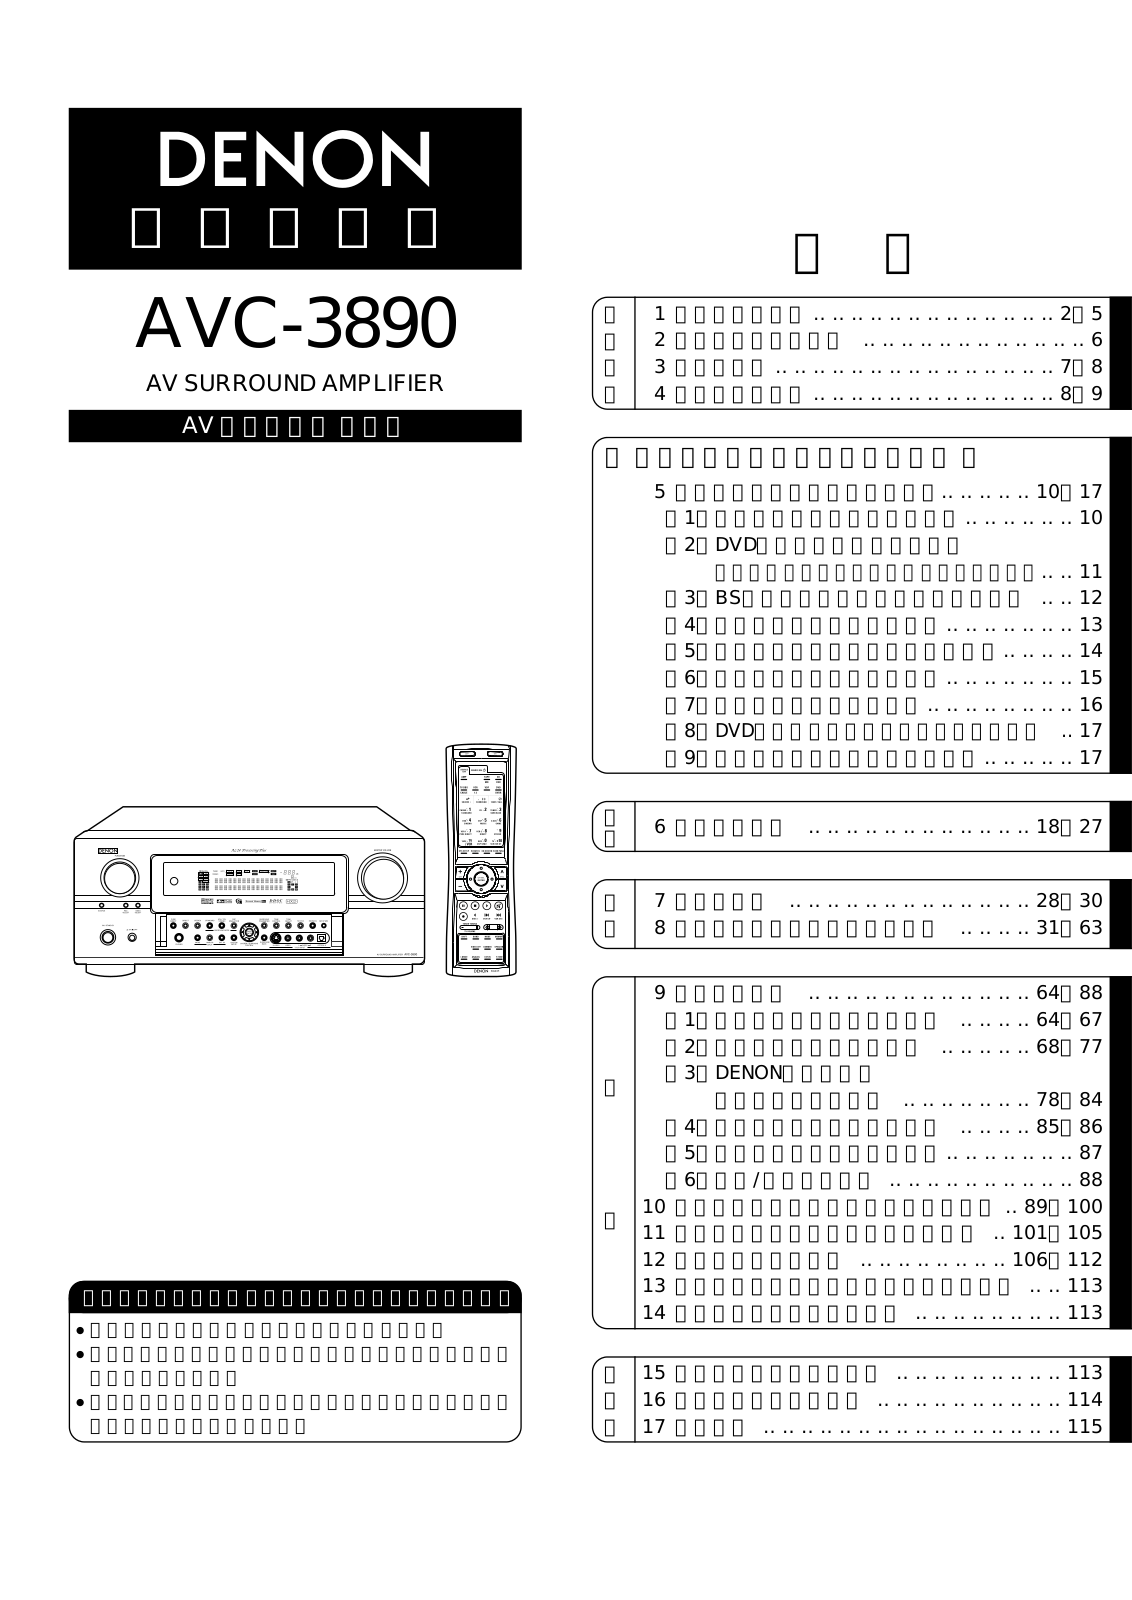 Denon AVC-3890 Owner's Manual